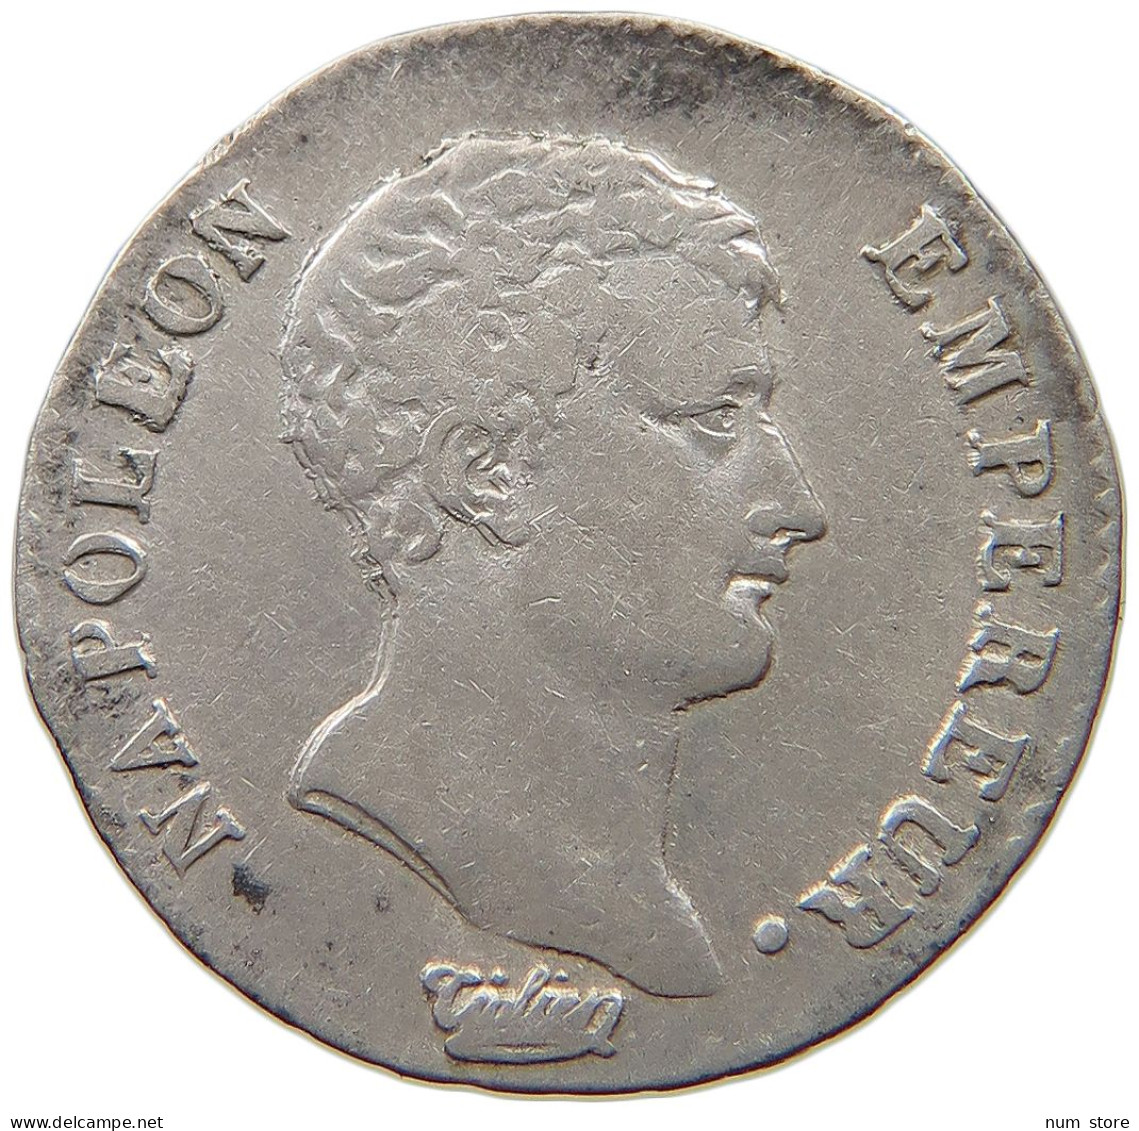 FRANCE 1/2 DEMI FRANC AN 13 A Napoleon I. (1804-1814, 1815) #t058 0251 - 1/2 Franc